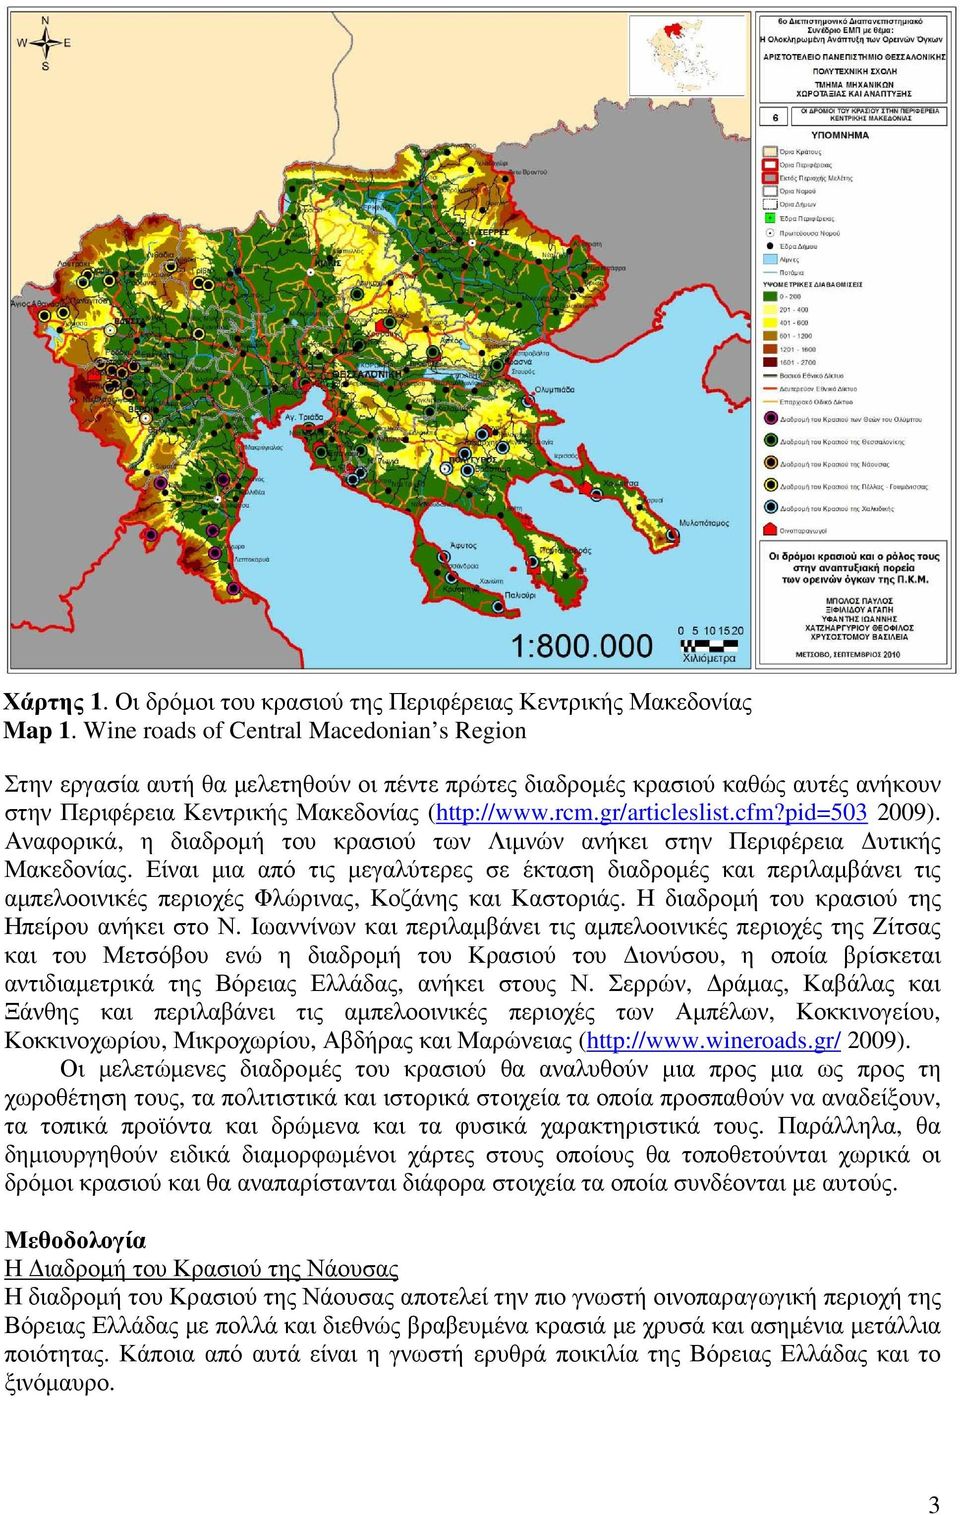 cfm?pid=503 2009). Αναφορικά, η διαδροµή του κρασιού των Λιµνών ανήκει στην Περιφέρεια υτικής Μακεδονίας.